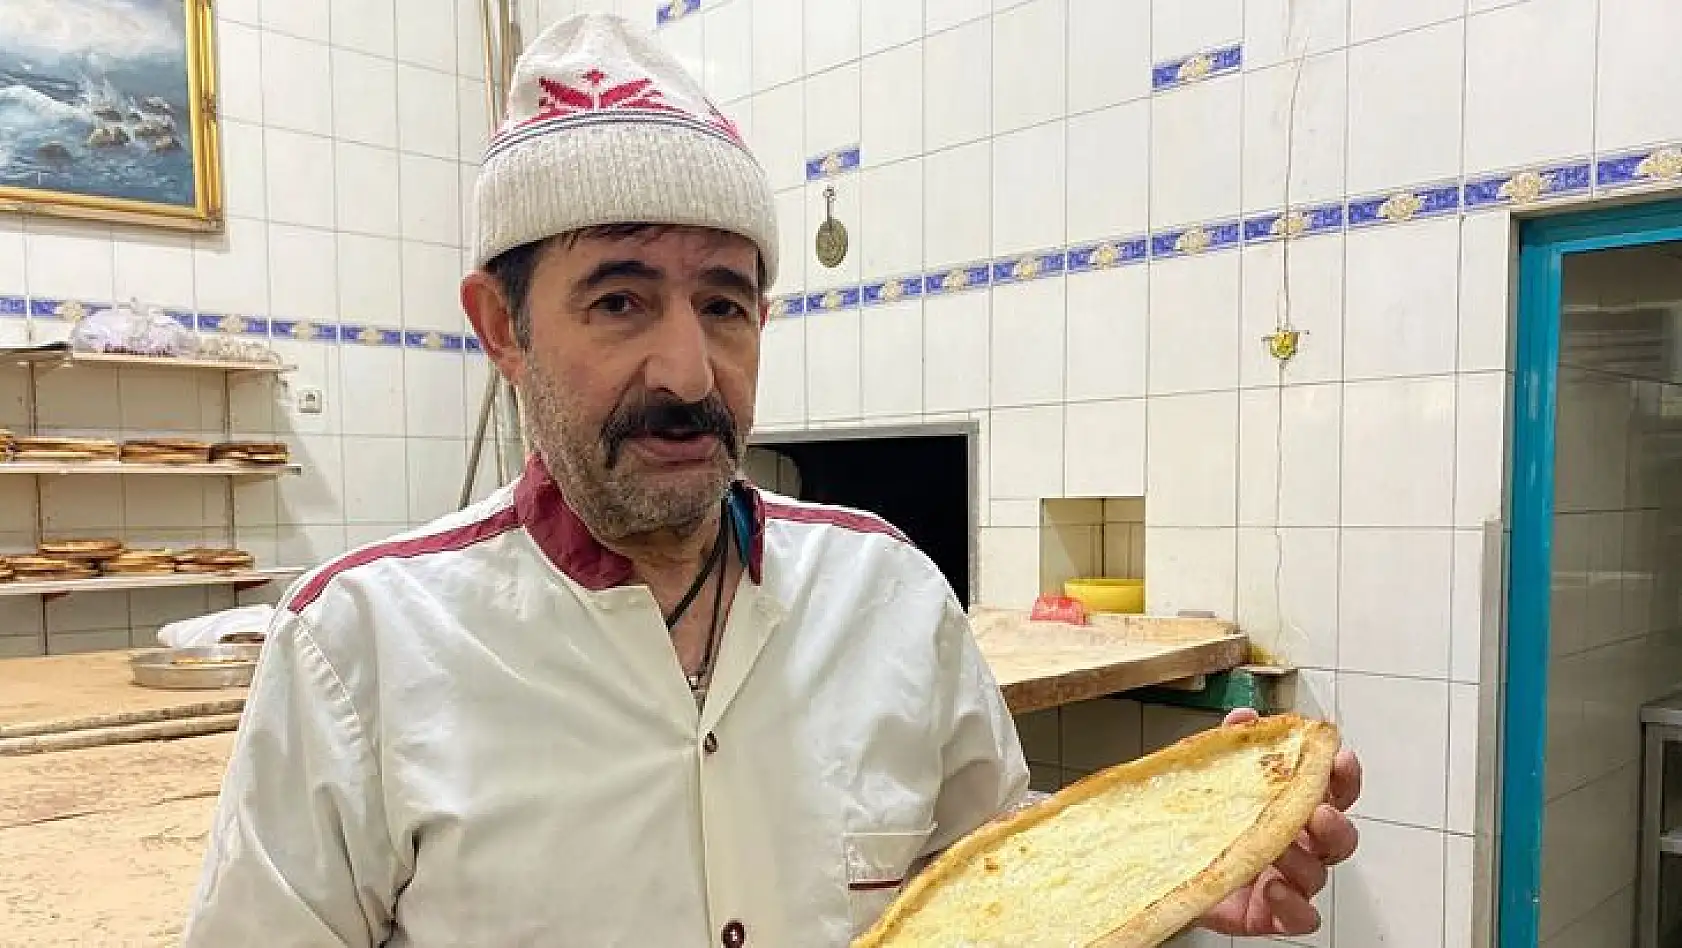 Elazığ'da Sofraların Vazgeçilmez Lezzeti 'Peynirli Ekmek'